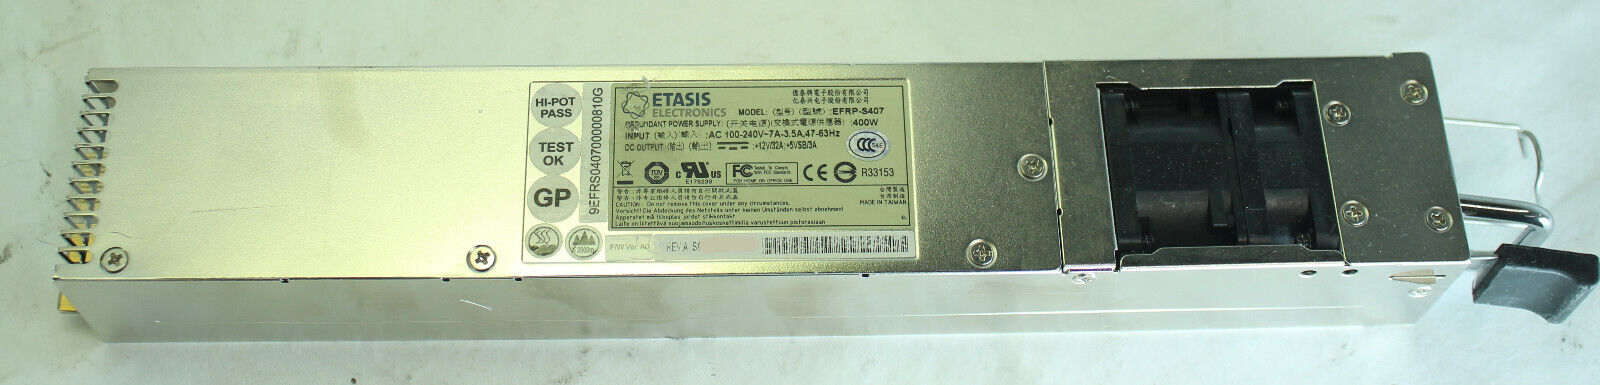 Etasis (for Fortigate) EFRP-S407 400W Redundant Power Supply